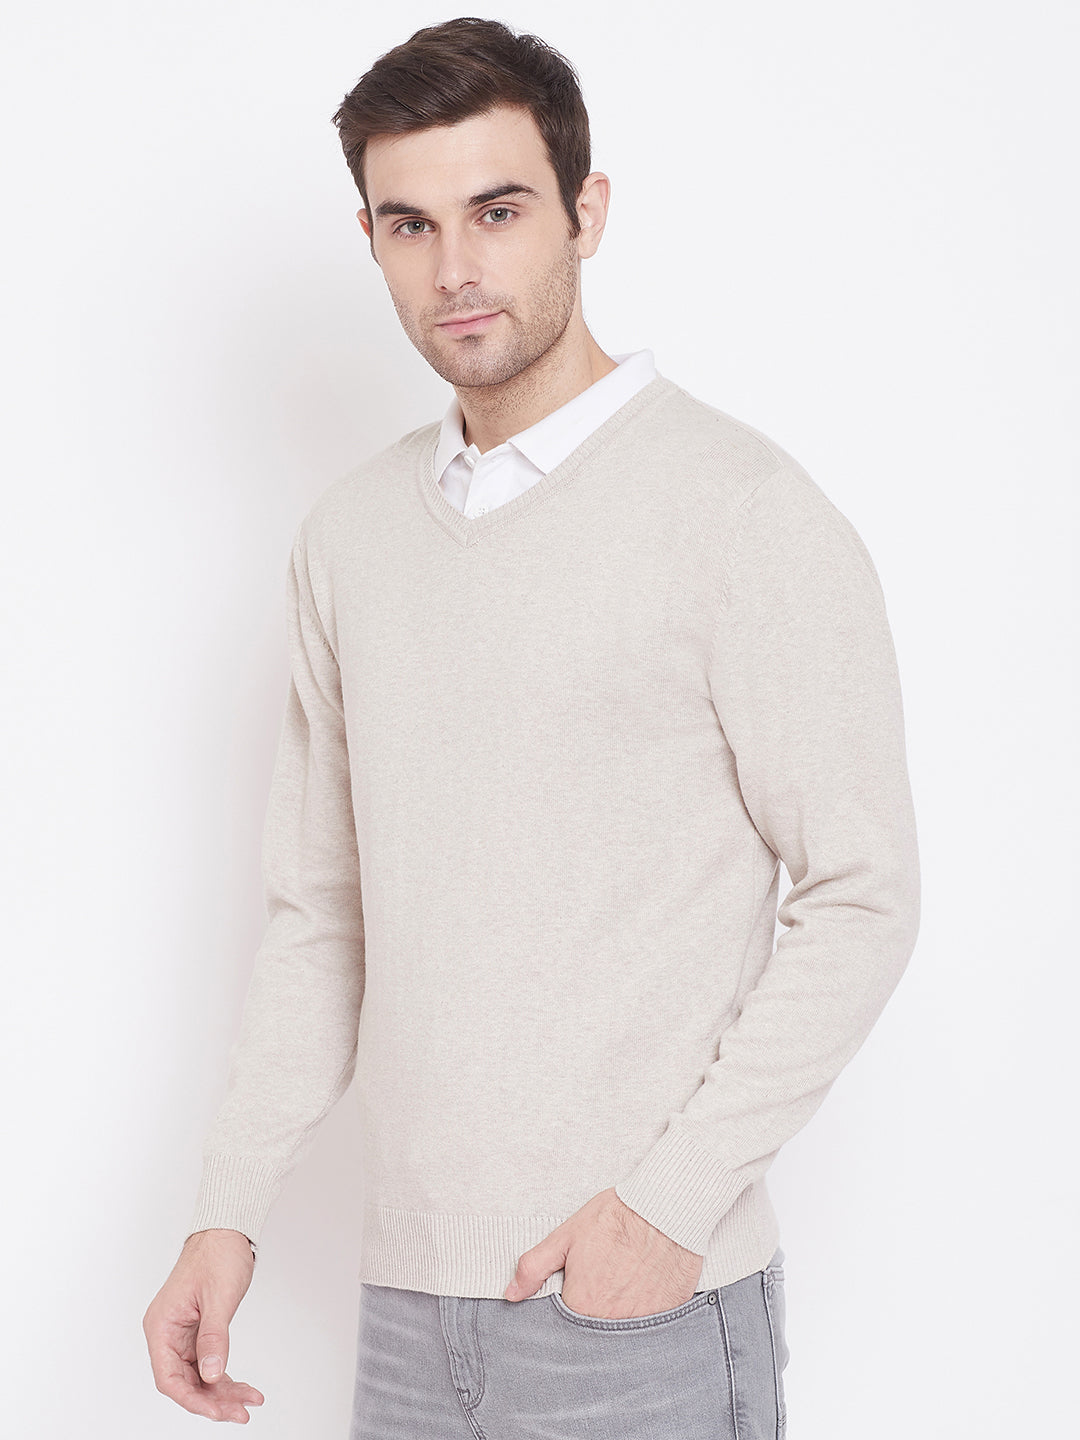 Beige V-Neck Sweater - Men Sweaters